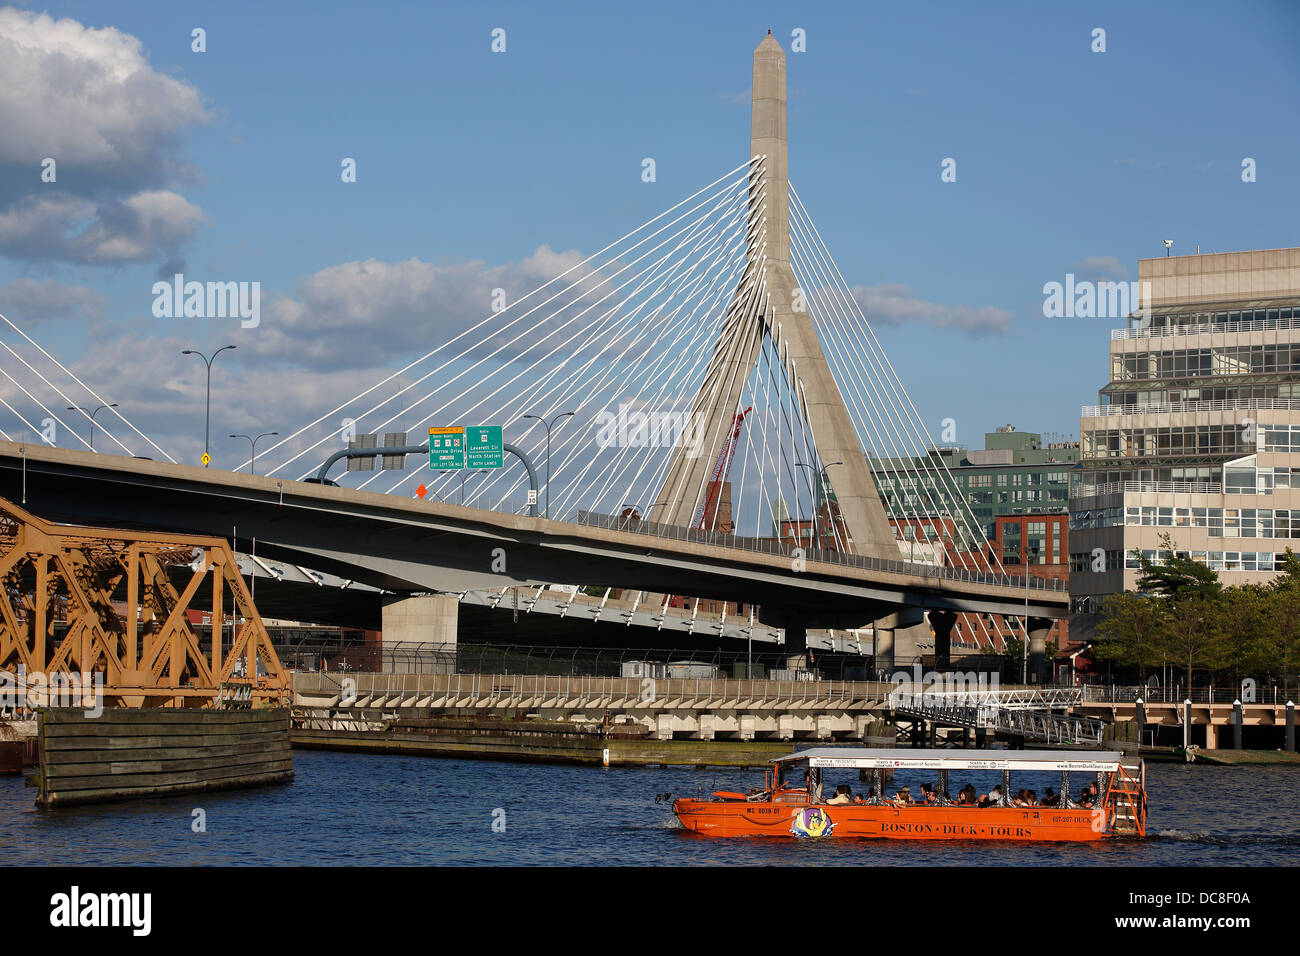 Leonard P. Zakim Bunker Hill Bridge over the Charles River in Boston, Massachusetts Stock Photo